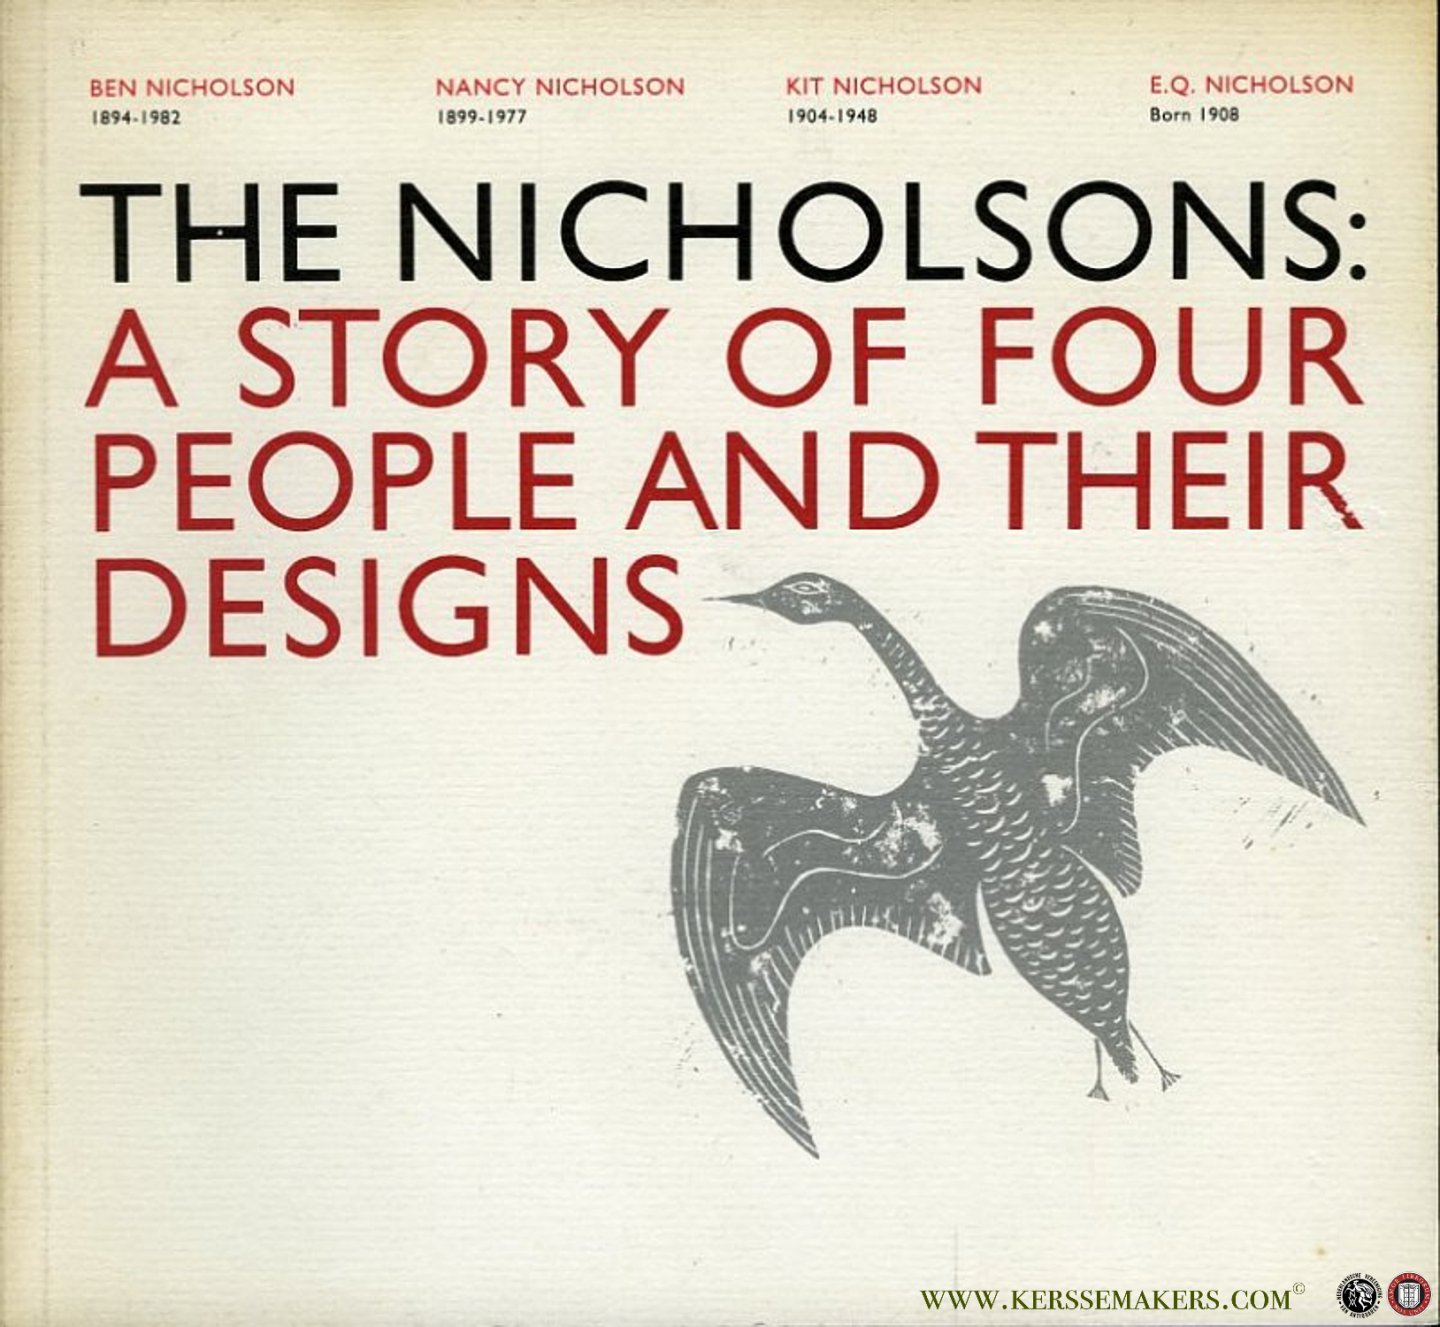 N/A - The Nicholsons: A story of four people and their designs. Ben Nicholson, 1894-1982, Nancy Nicholson, 1899-1977, Kit Nicholson, 1904-1948, E.Q. Nicholson, born 1908